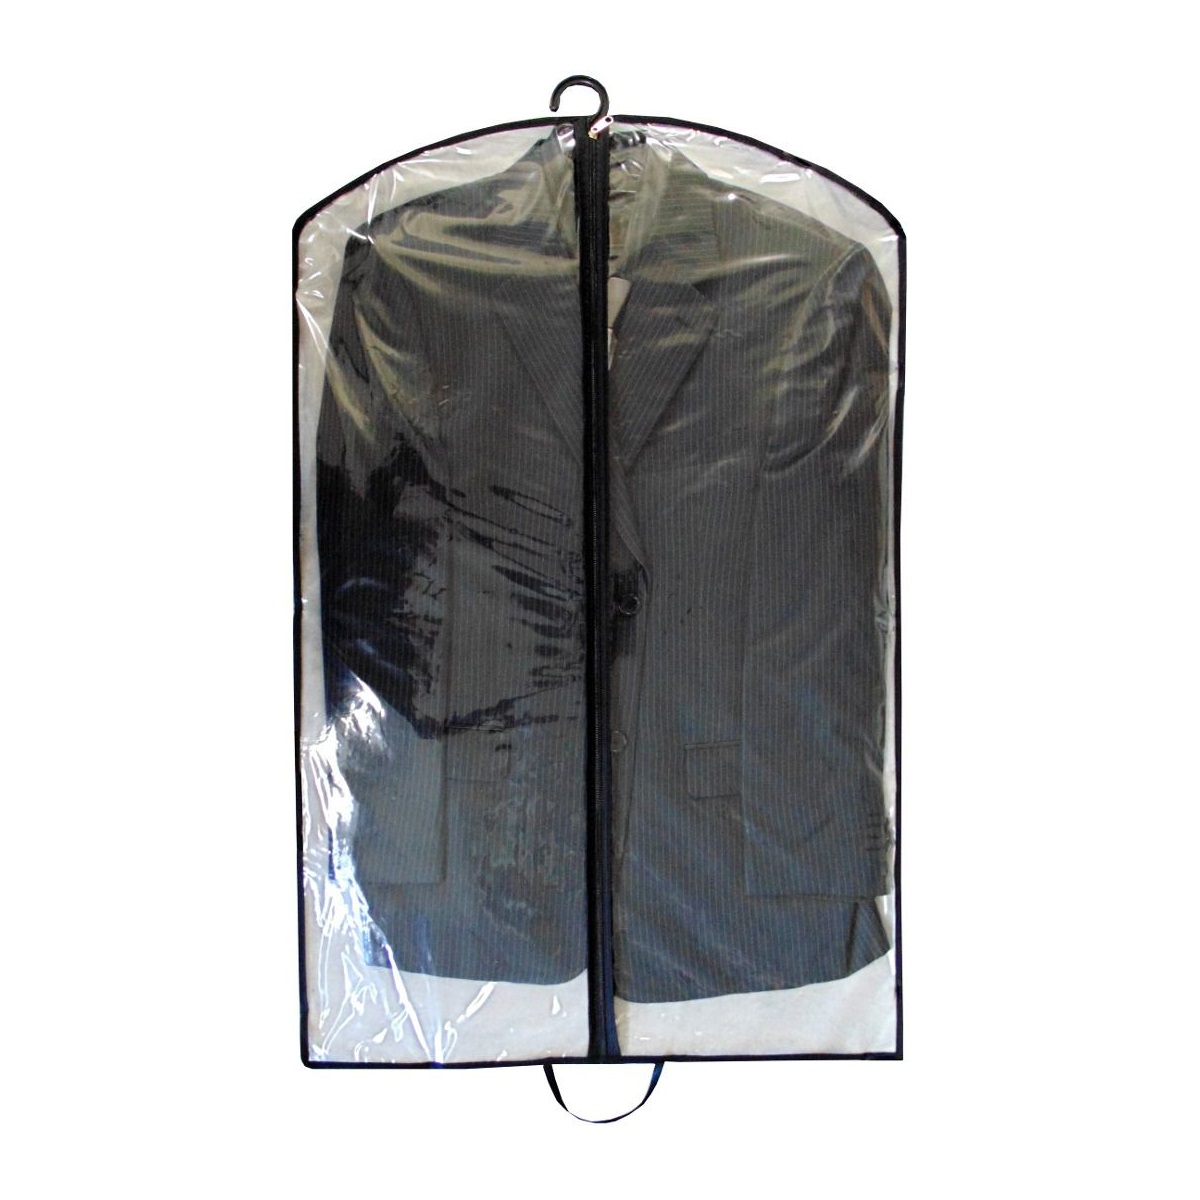 Capa Protetora Para Roupas Com Ziper 89x59cm Transparente